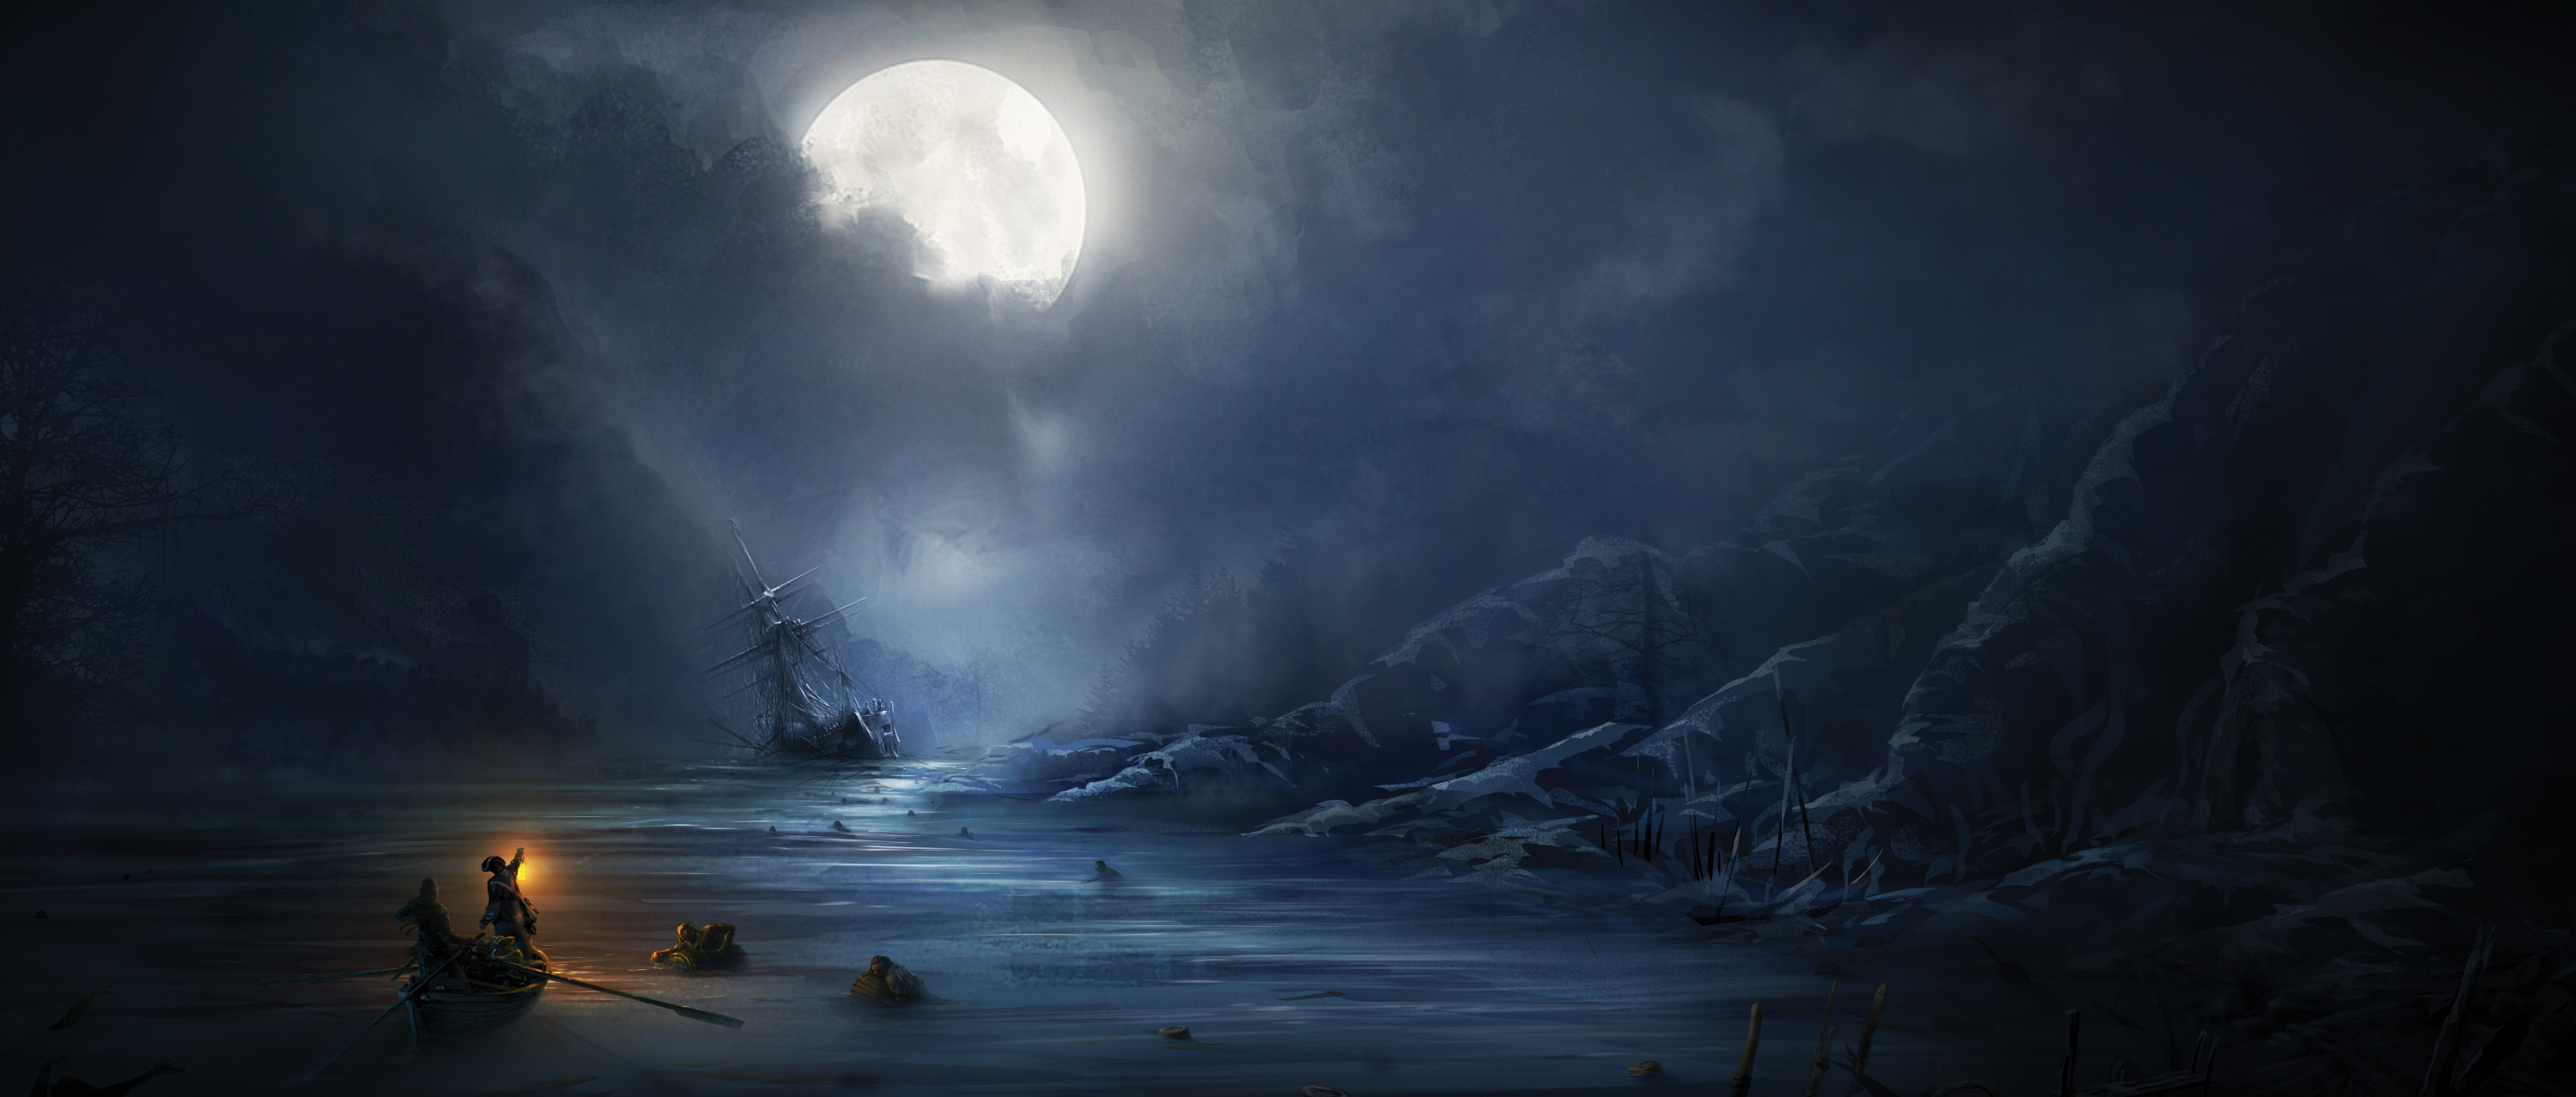 Ночь ставшая концом. Айвазовский картины Лунная ночь. Картина Айвазовского море Лунная ночь. Айвазовский картины ночные с луной. Картина Айвазовского берег моря ночью.